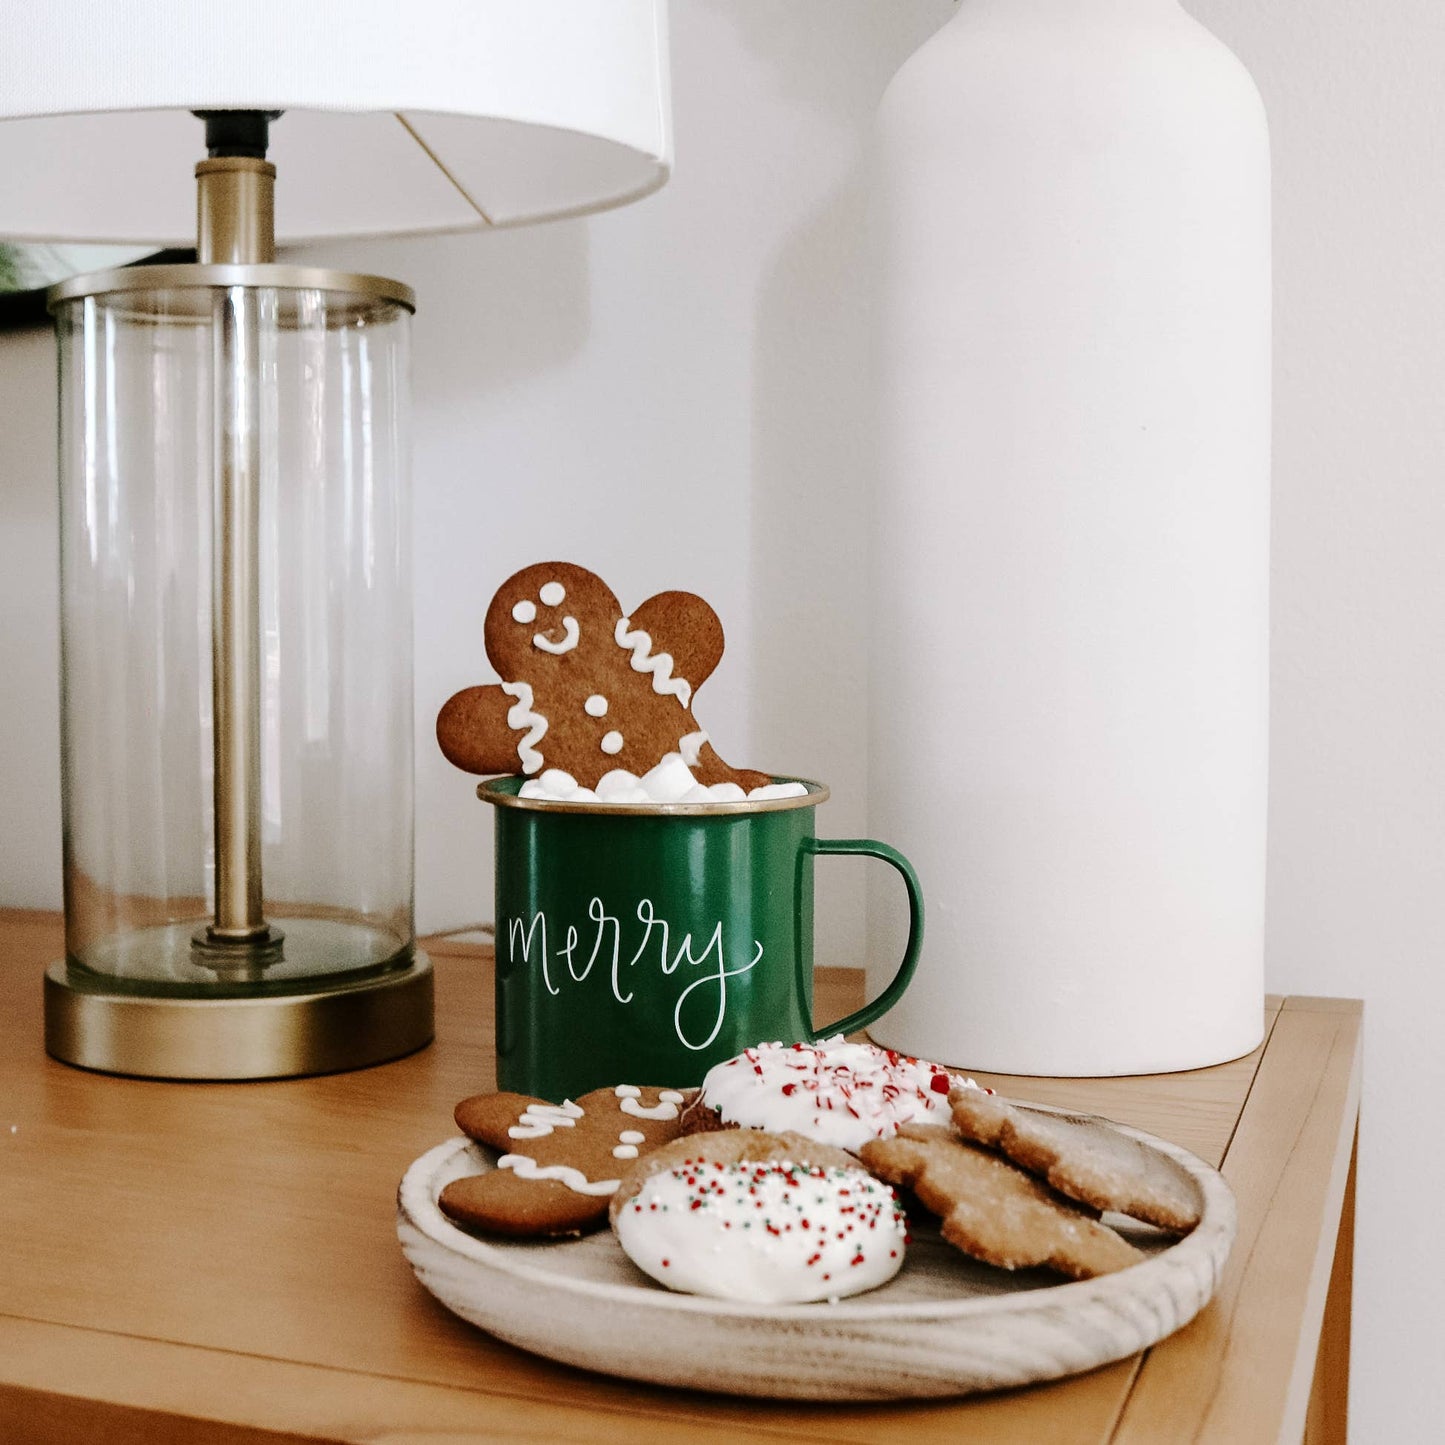 Merry Coffee Mug - Christmas Home Decor & Gifts